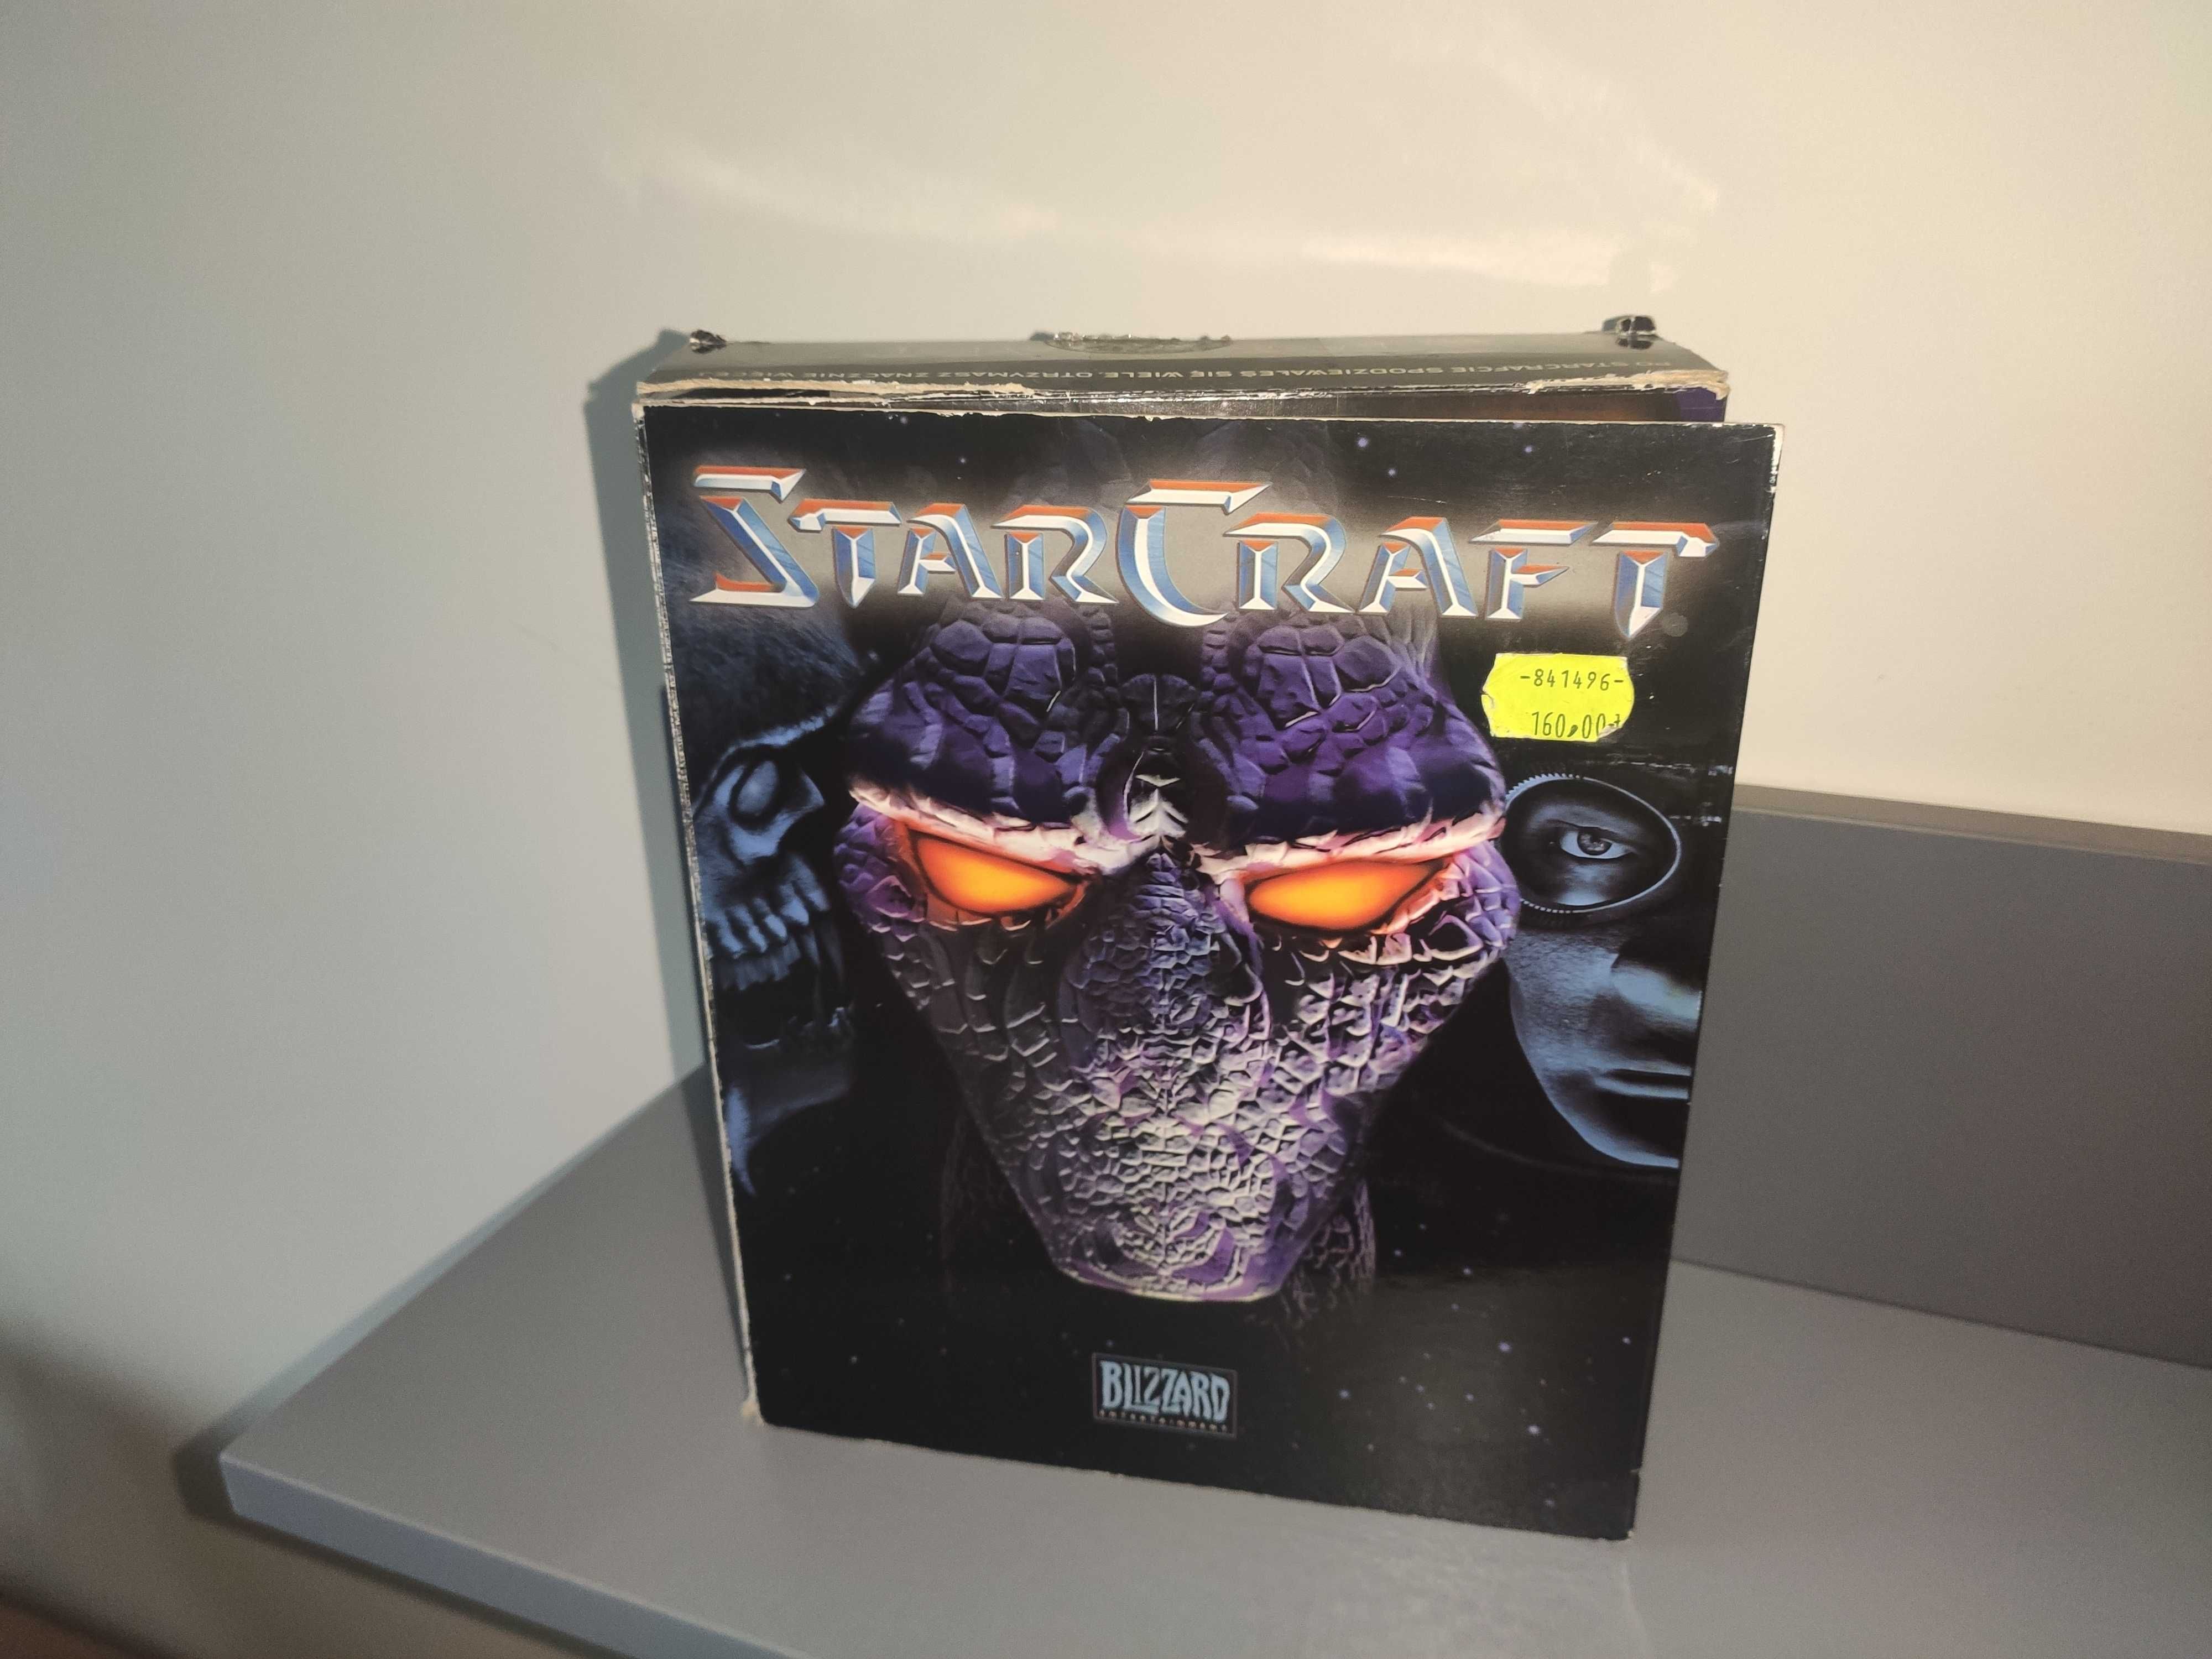 Starcraft PC PL Big box, premierowy